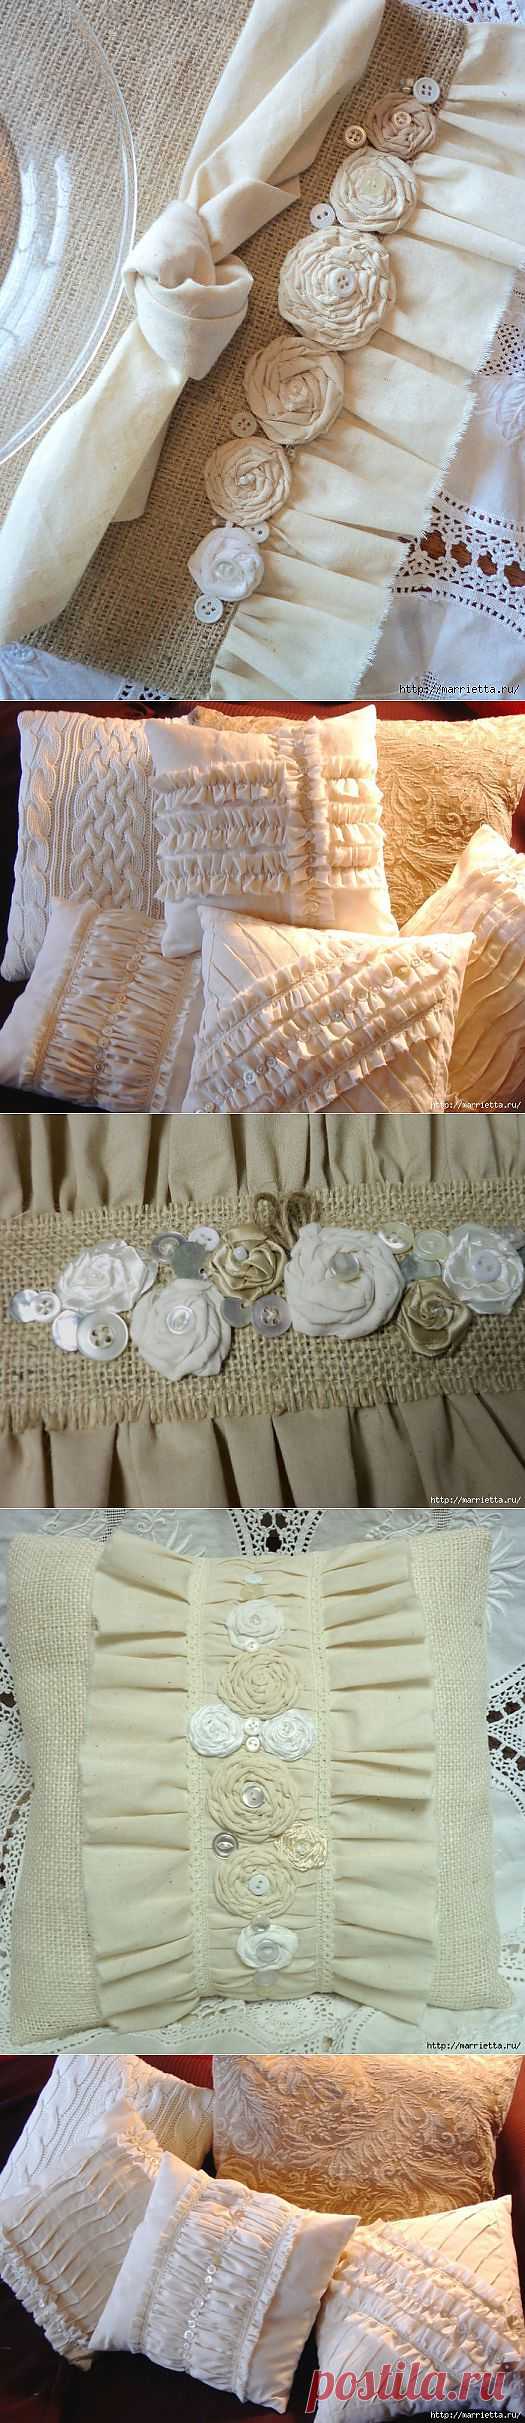 Подушки и салфетки из мешковины, бязи и цветов, в стиле шебби шик.